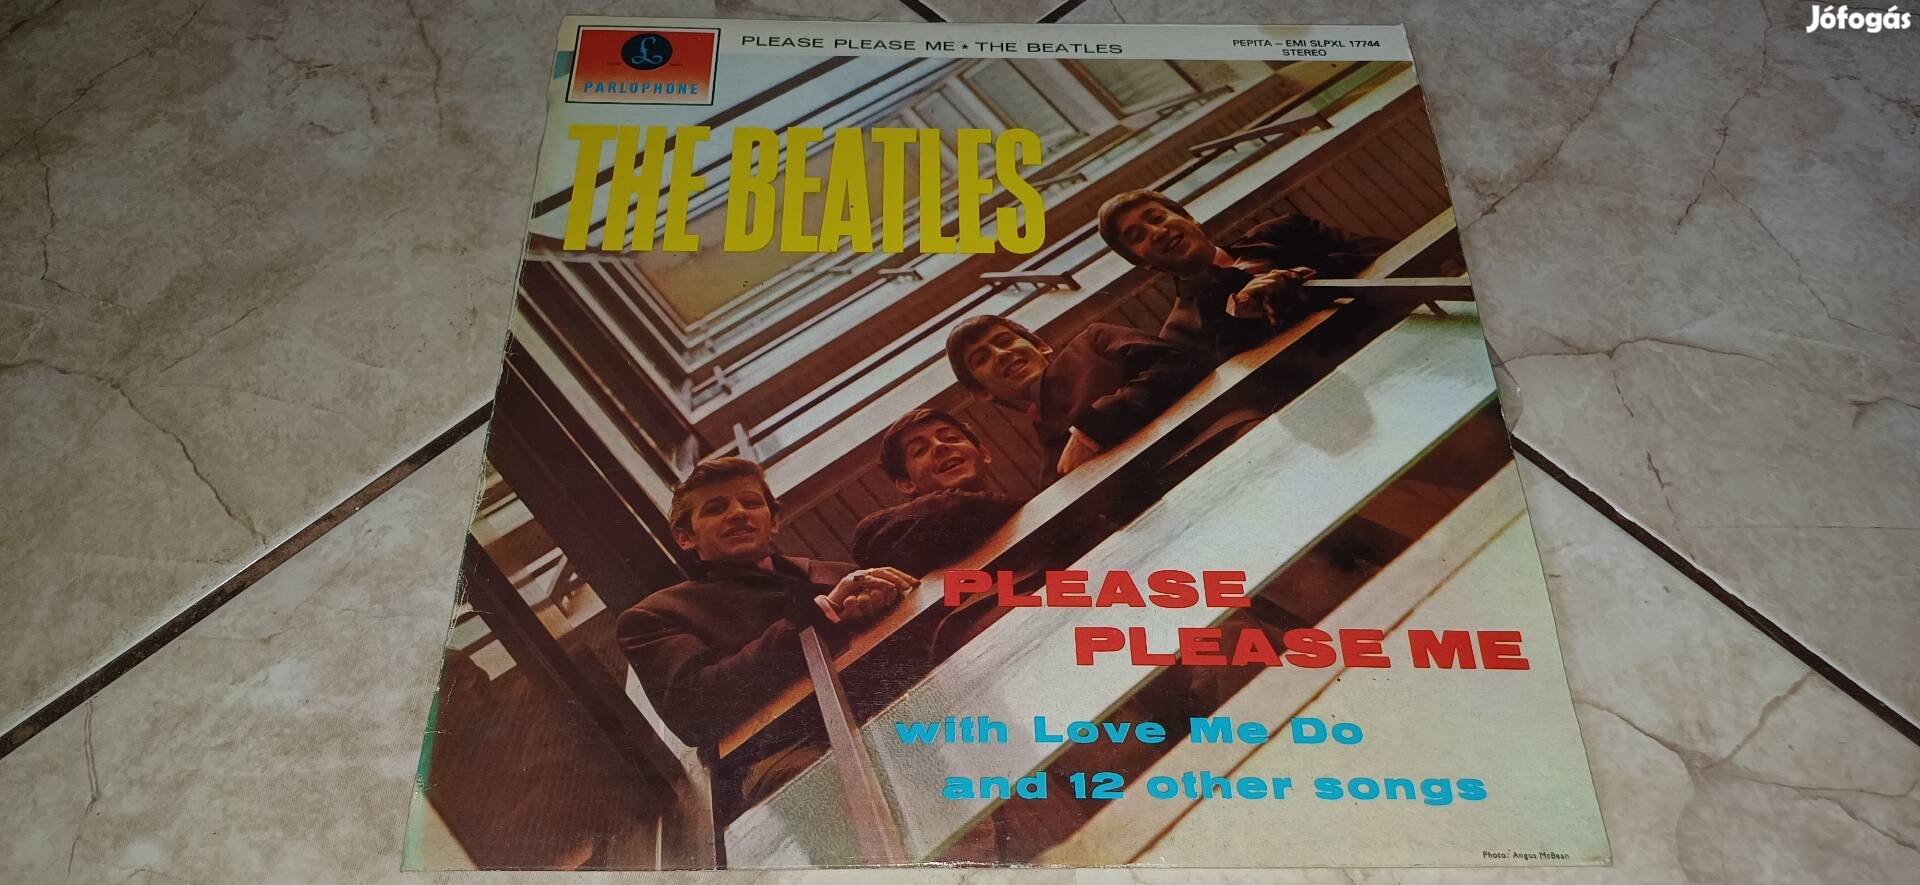 Beatles bakelit lemez